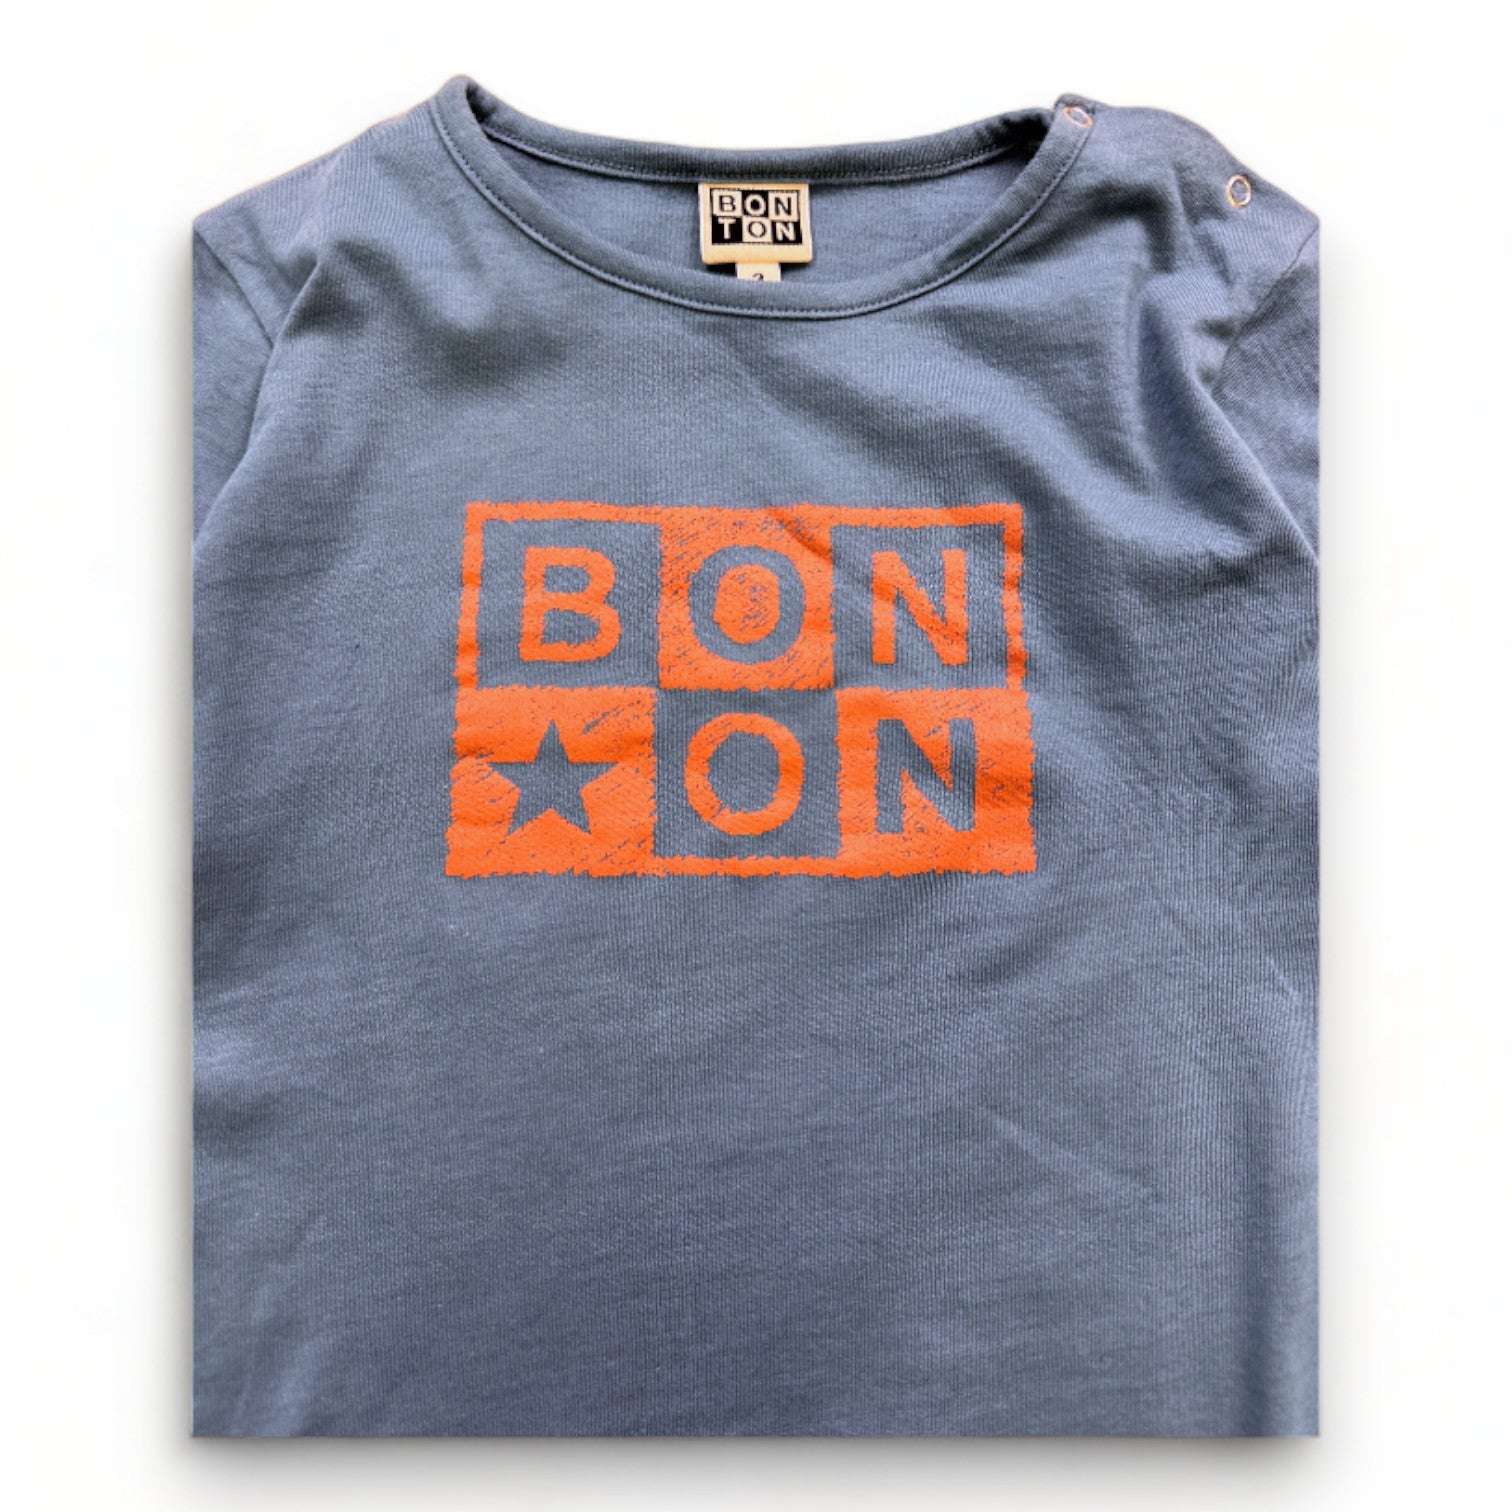 BONTON - T-shirt à manches longues bleu avec imprimé "Bonton" - 3 ans